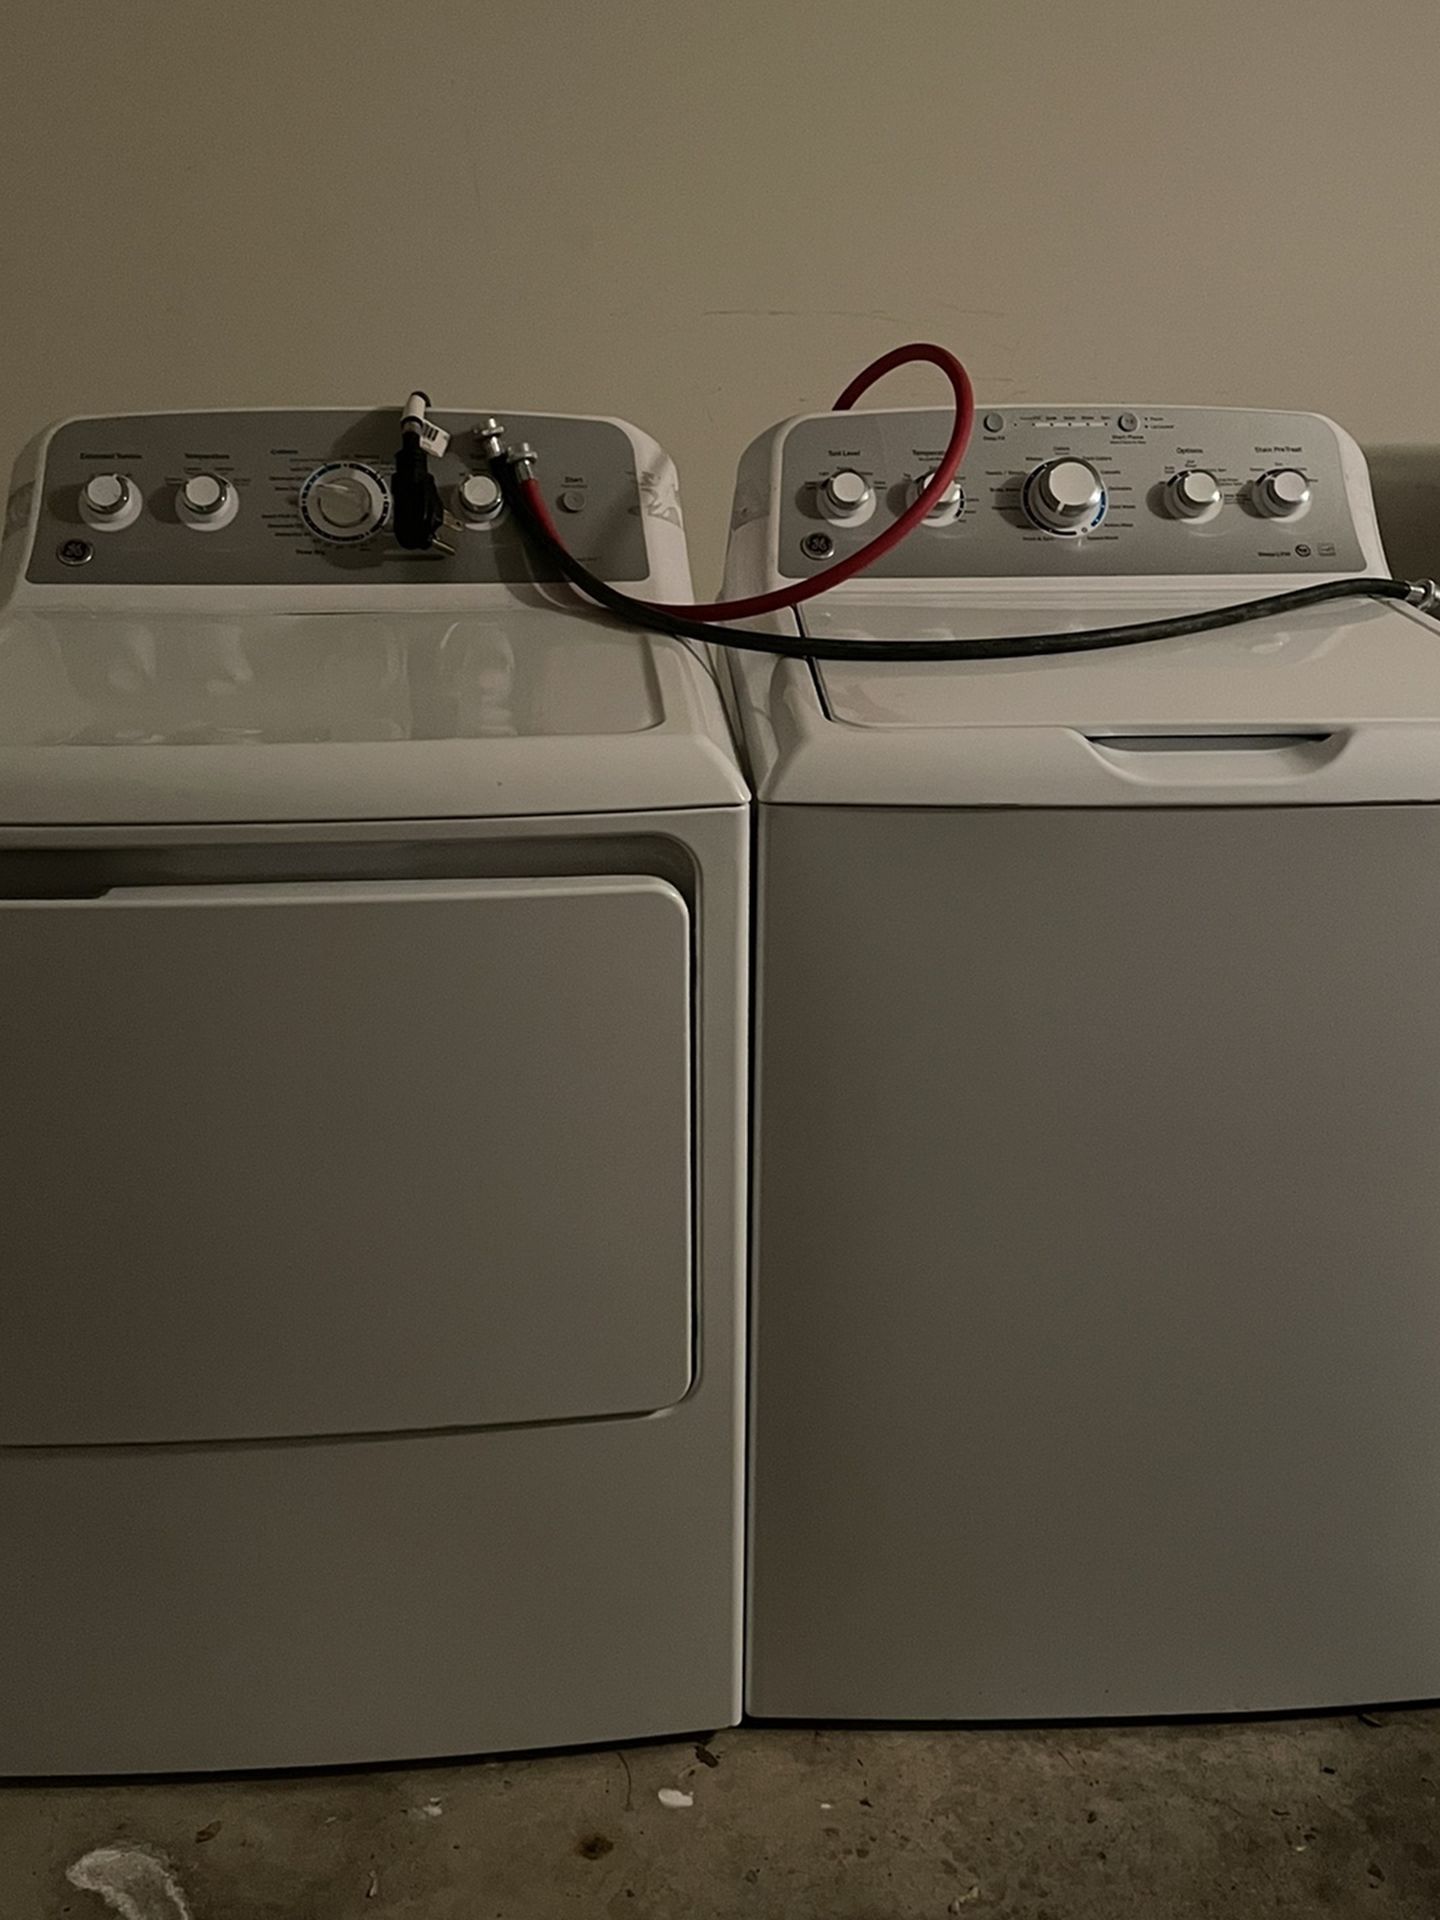 GE Washer Dryer Set